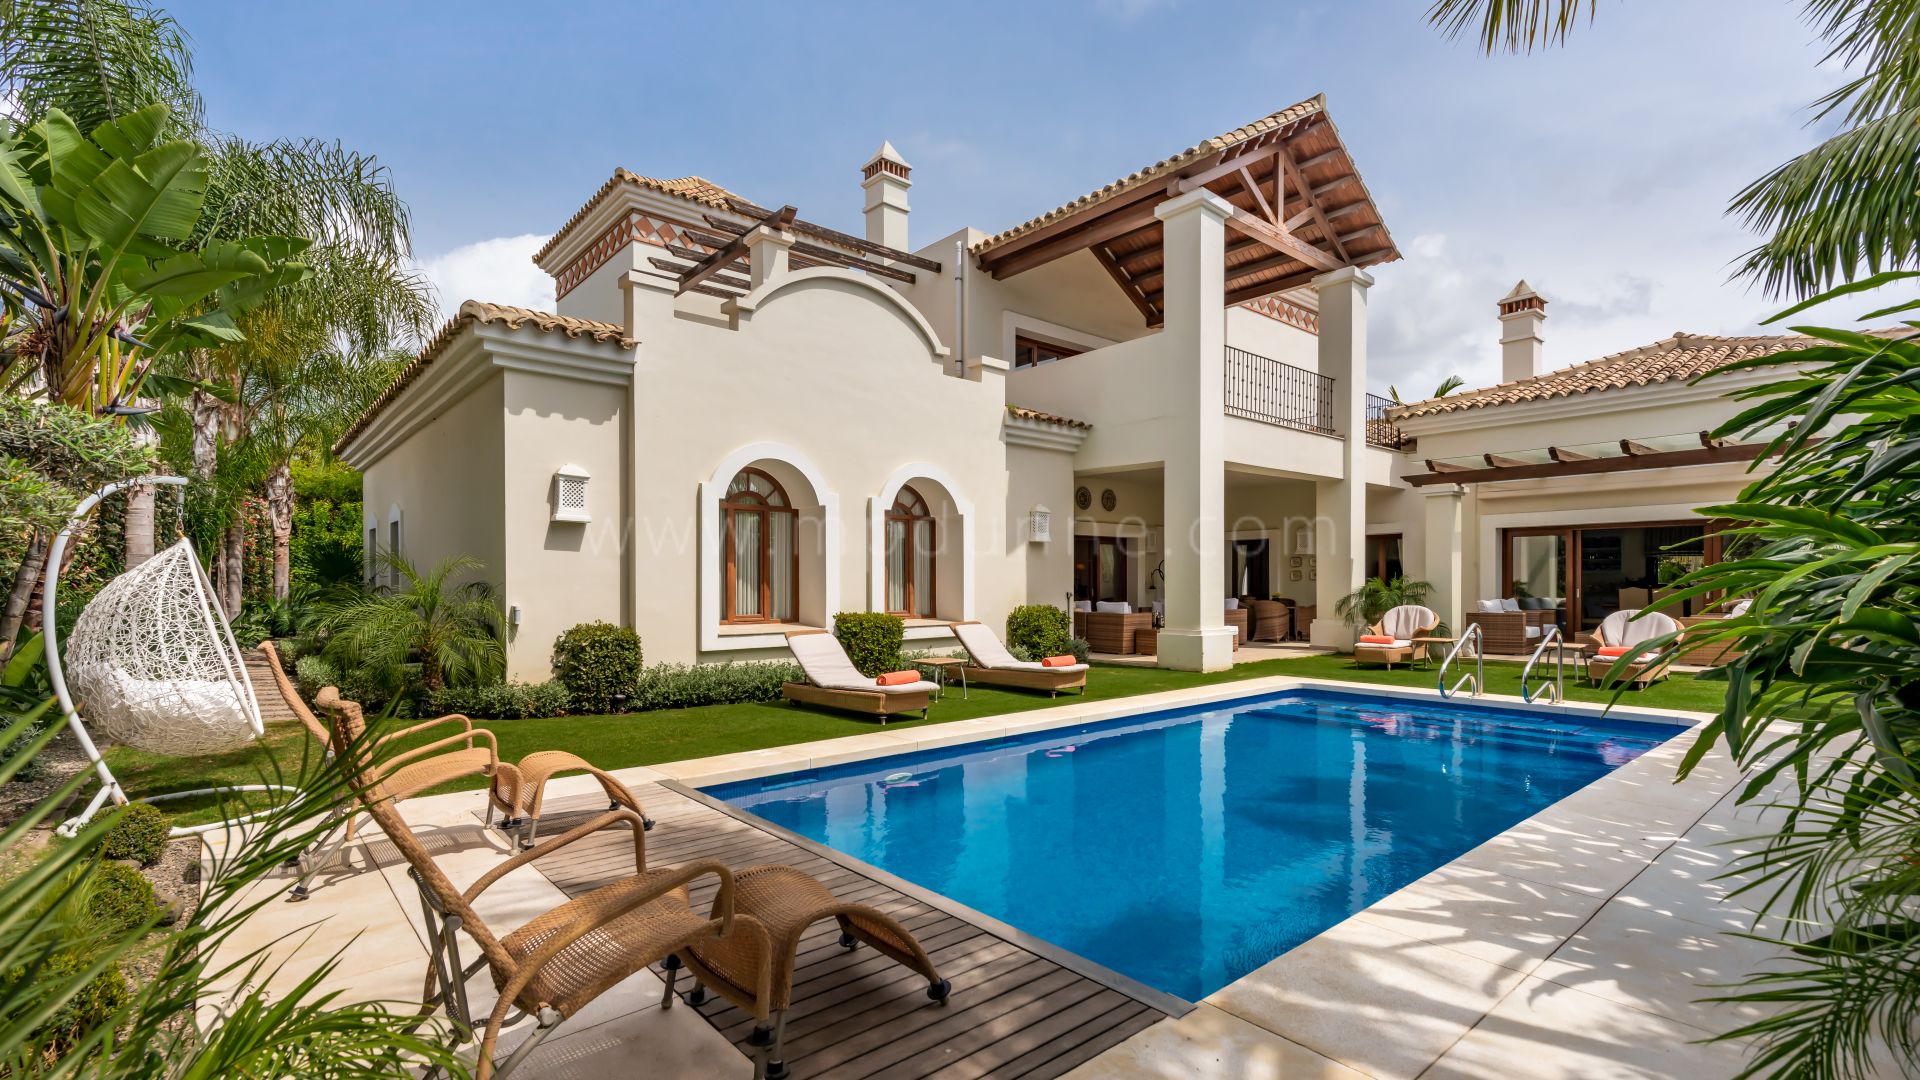 Villa mit sechs Schlafzimmern in Casablanca, nur 500 Meter vom Strand entfernt